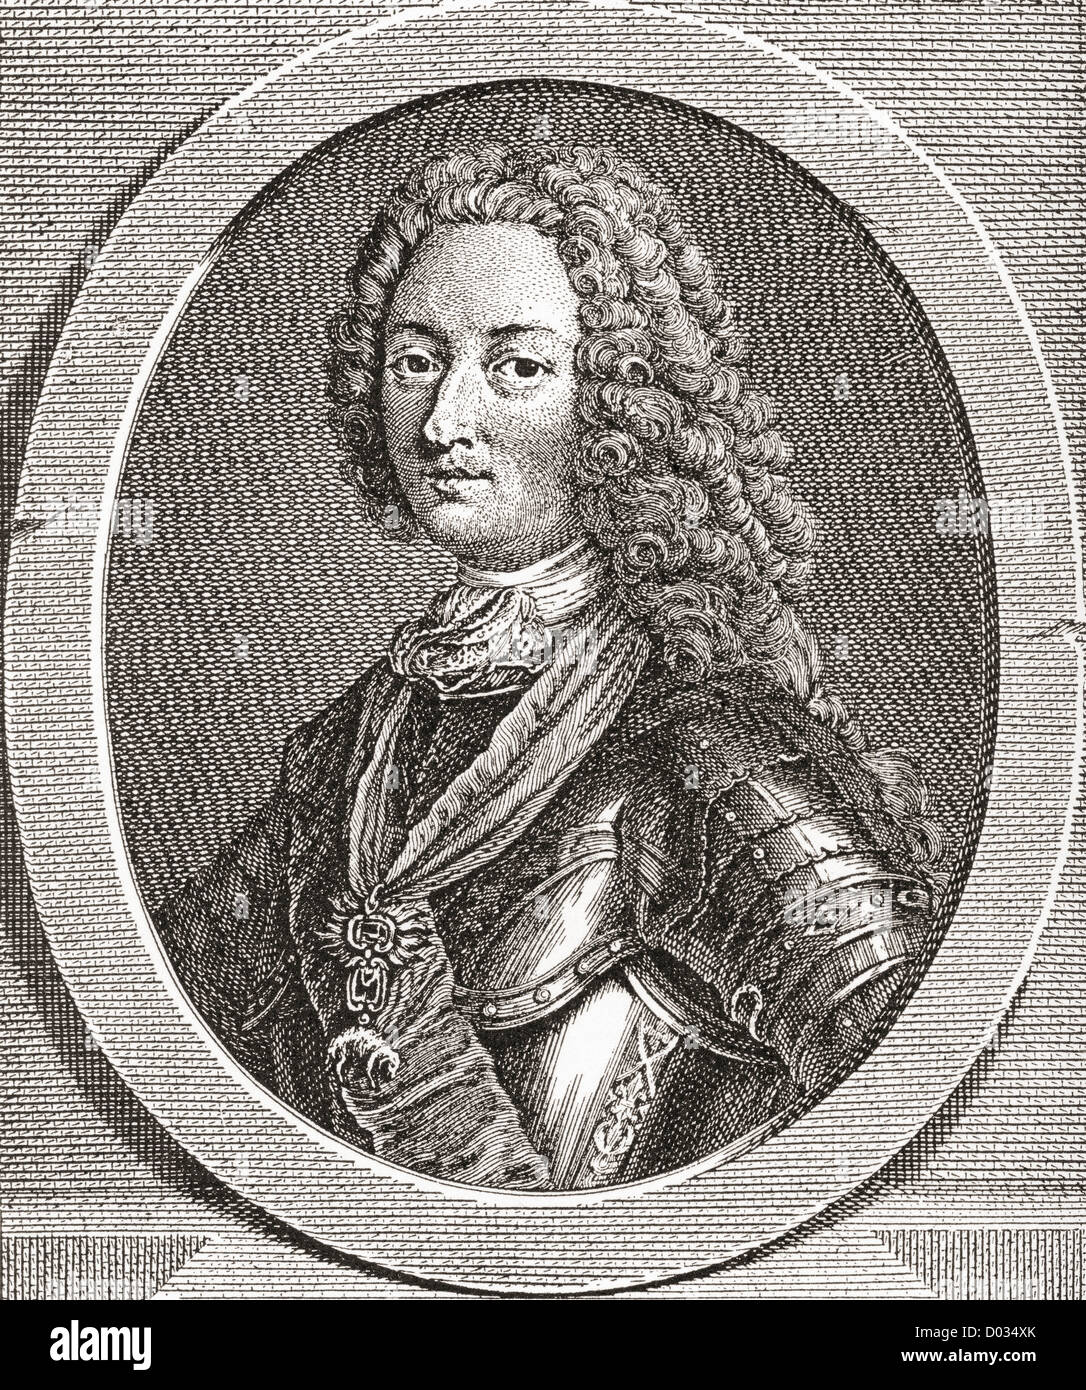 Louis d'Orléans, duc d'Orléans, 1703 - 1752. Duc d'Orléans et un membre de la famille royale française. Banque D'Images